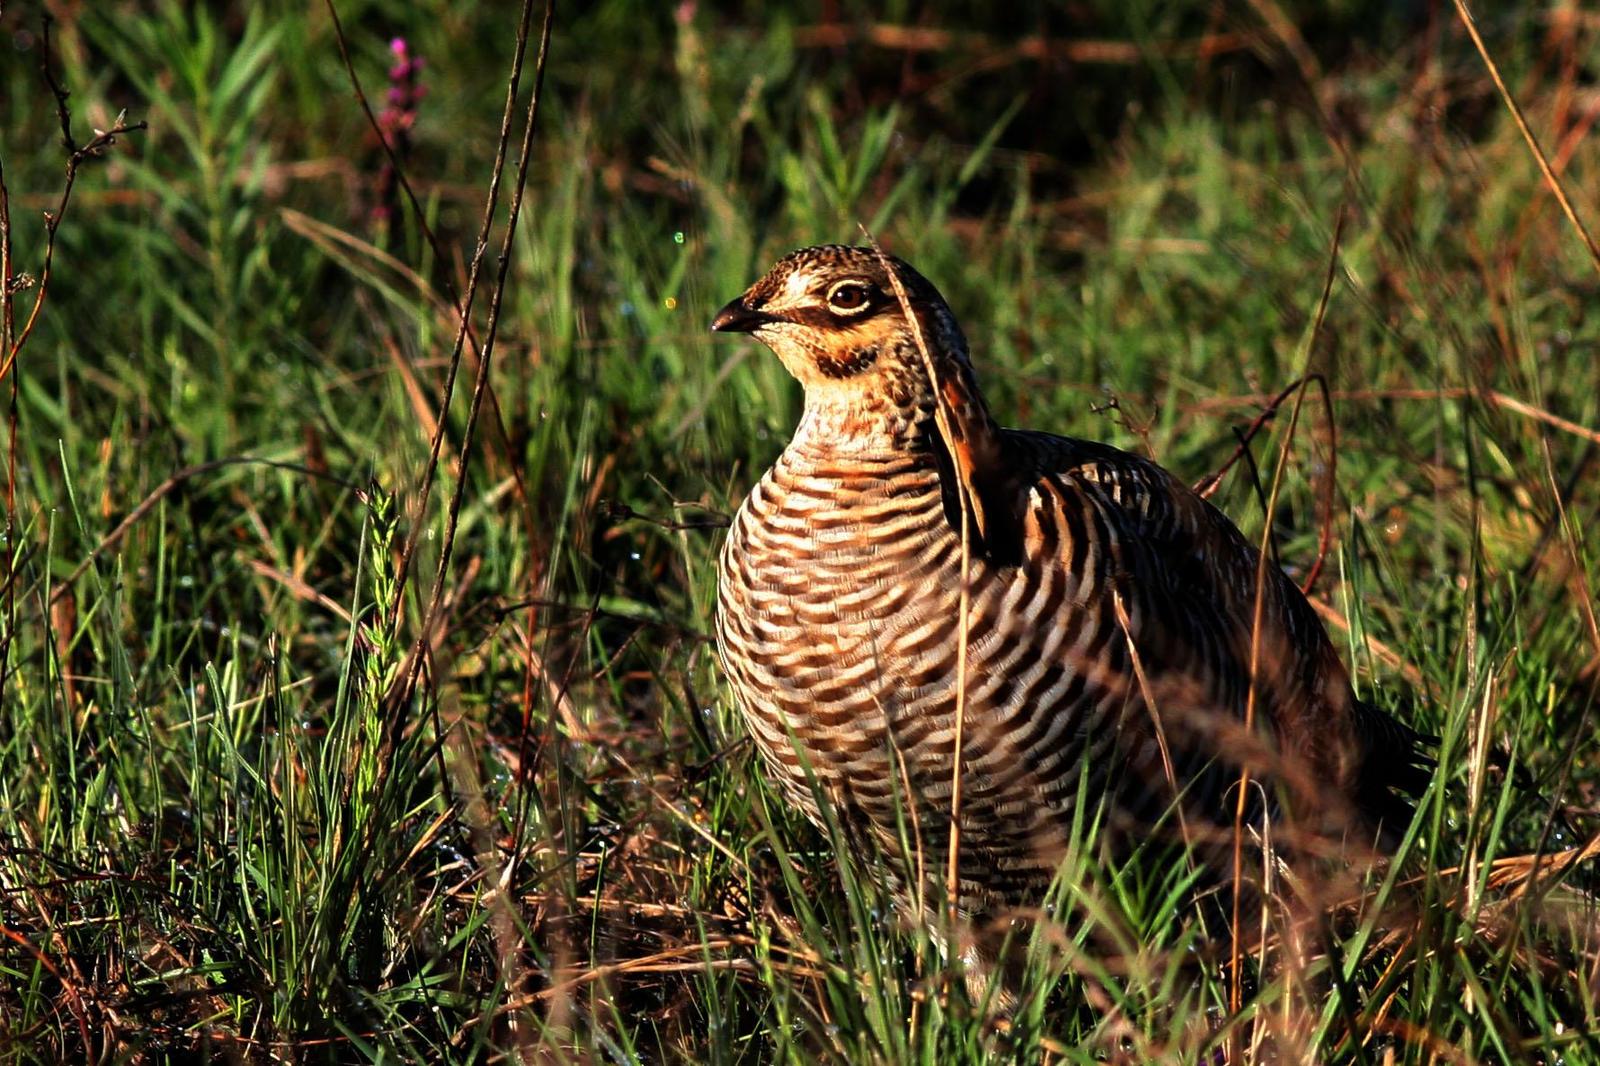 Greater Prairie-Chicken (Attwater's) Photo by David Sarkozi